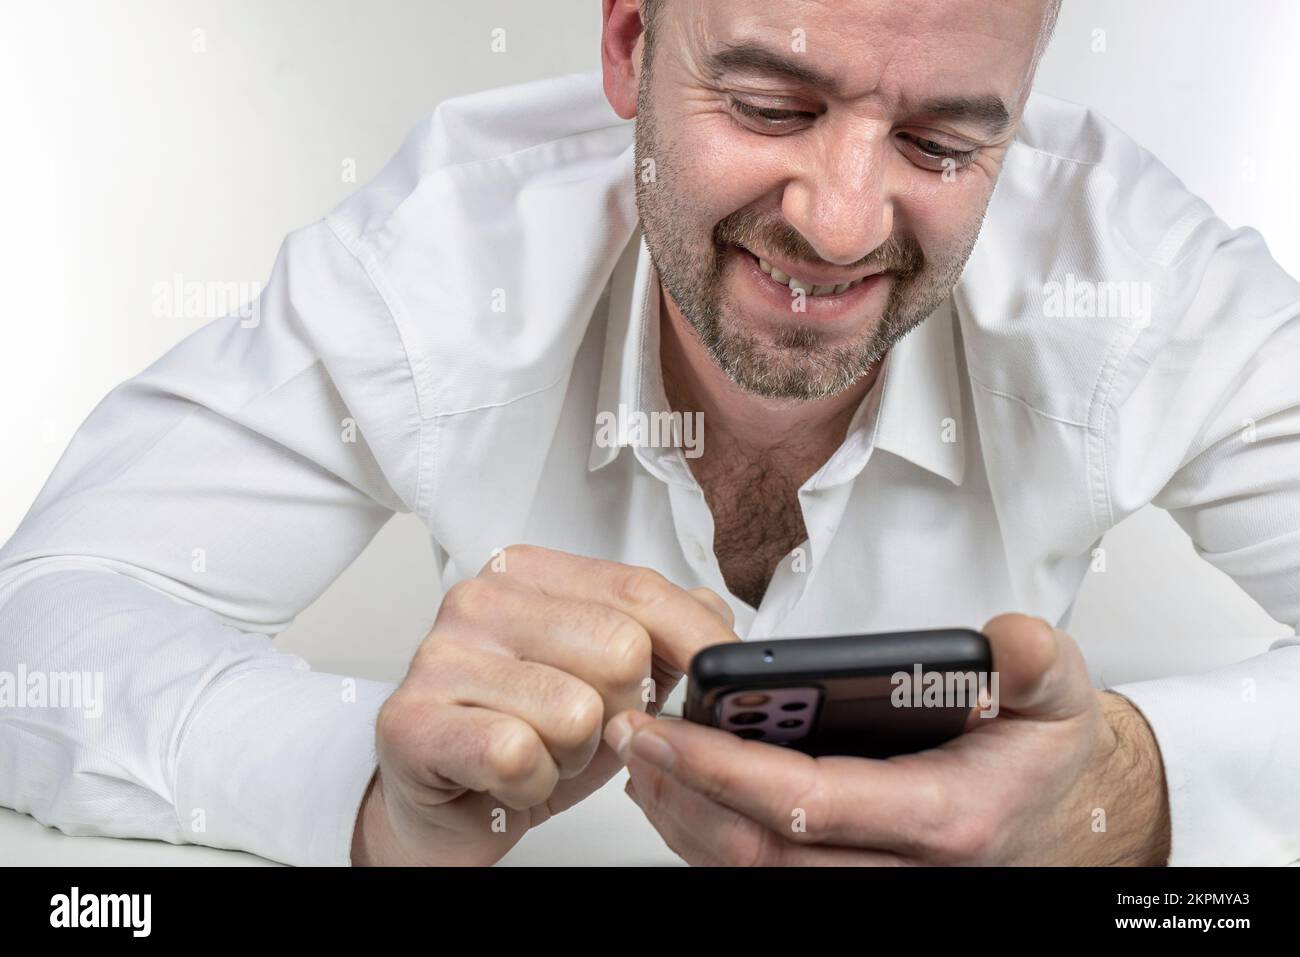 l'homme souriant utilise un smartphone Banque D'Images